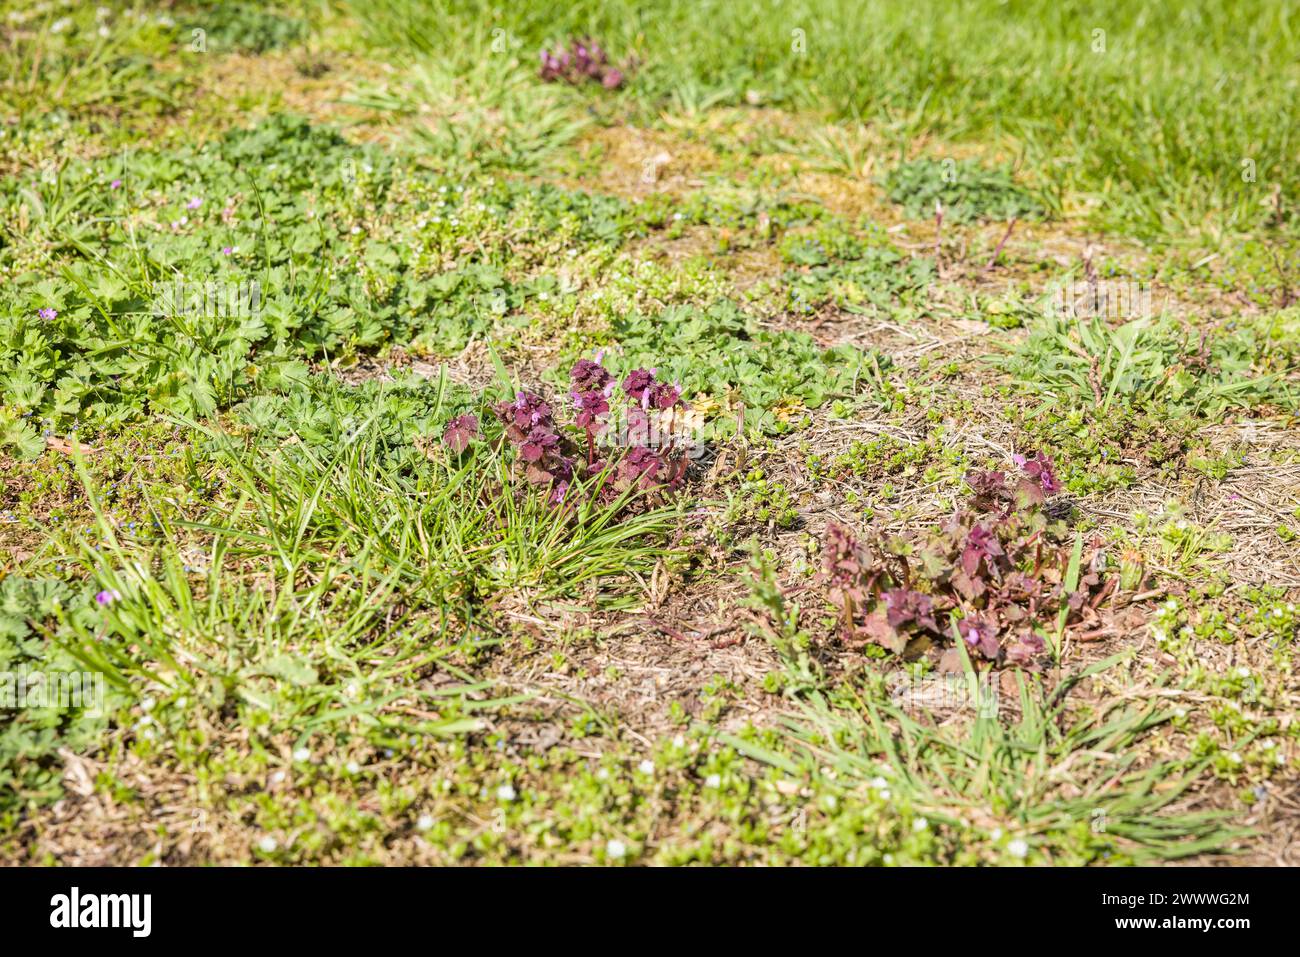 Gros plan des mauvaises herbes dans une pelouse dans un jardin britannique, avec l'ortie morte violette. Entretien du jardin et désherbage. Banque D'Images